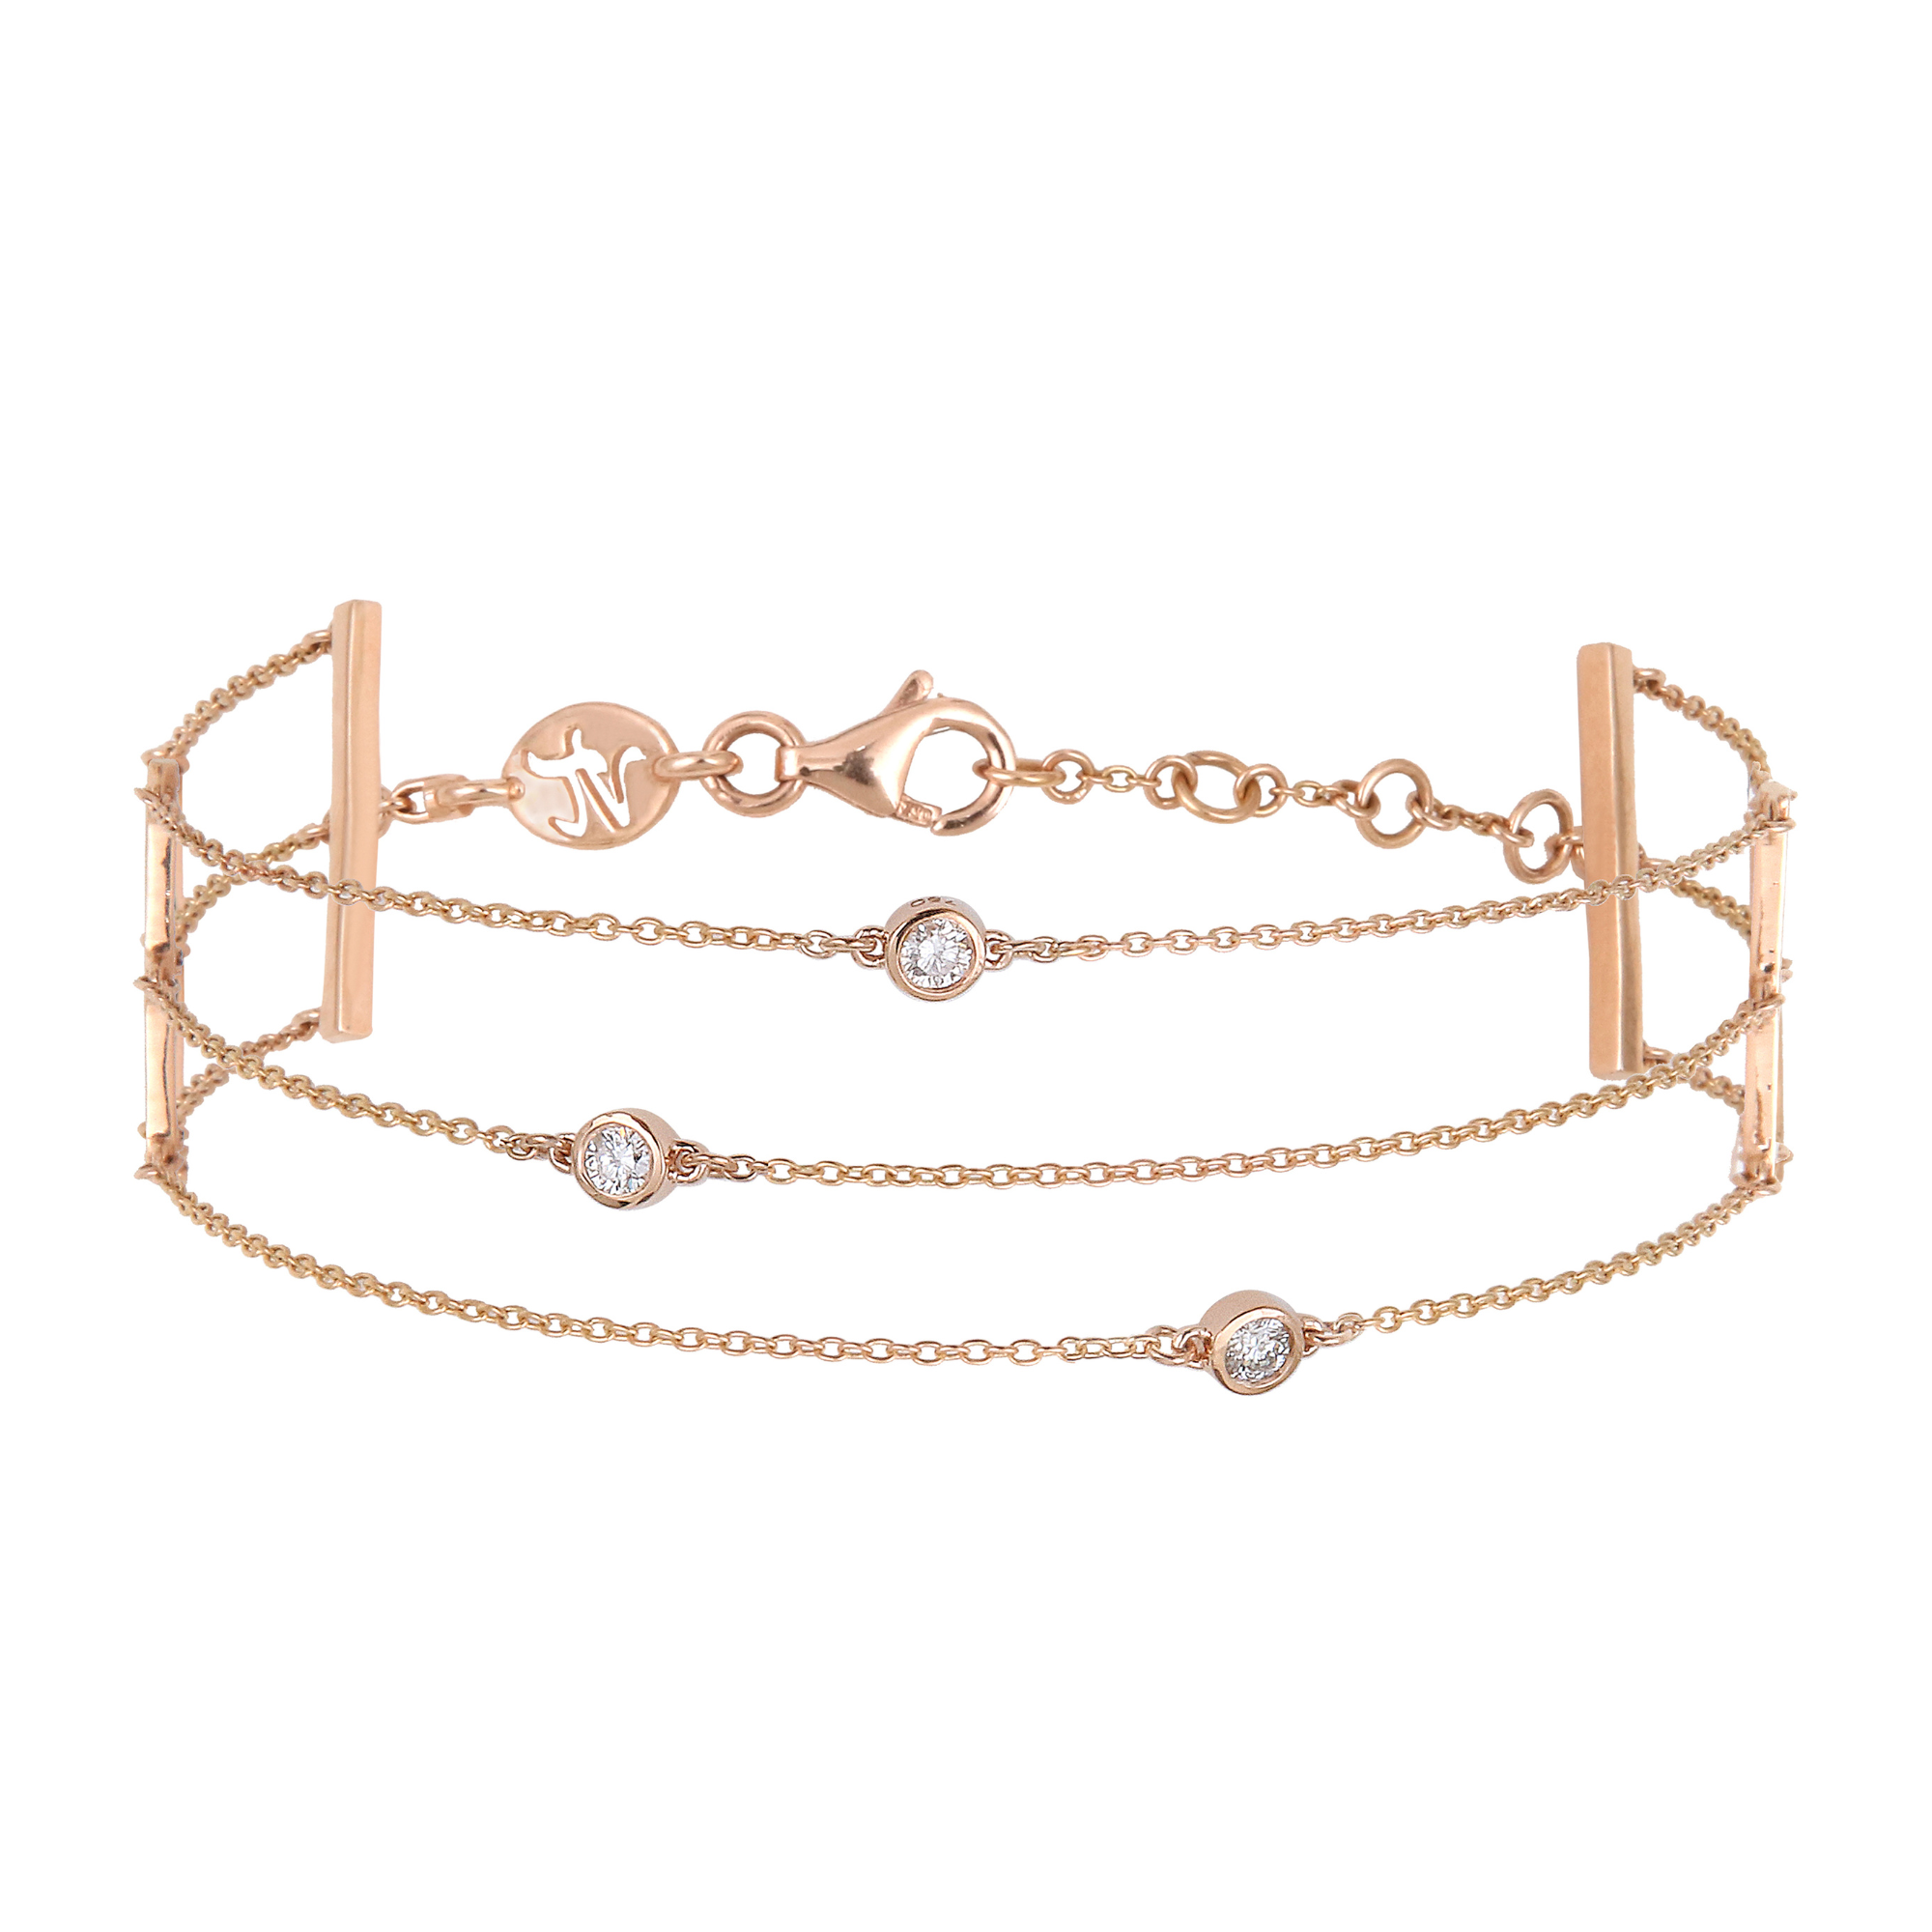 Bracelet multi-chaînettes en or rose et diamants solitaires est un bijou de joaillerie fine élégant, raffiné, mode et tendance fabriqué en France. Cadeau idéal pour un anniversaire, Noël, des fiançailles ou un mariage.